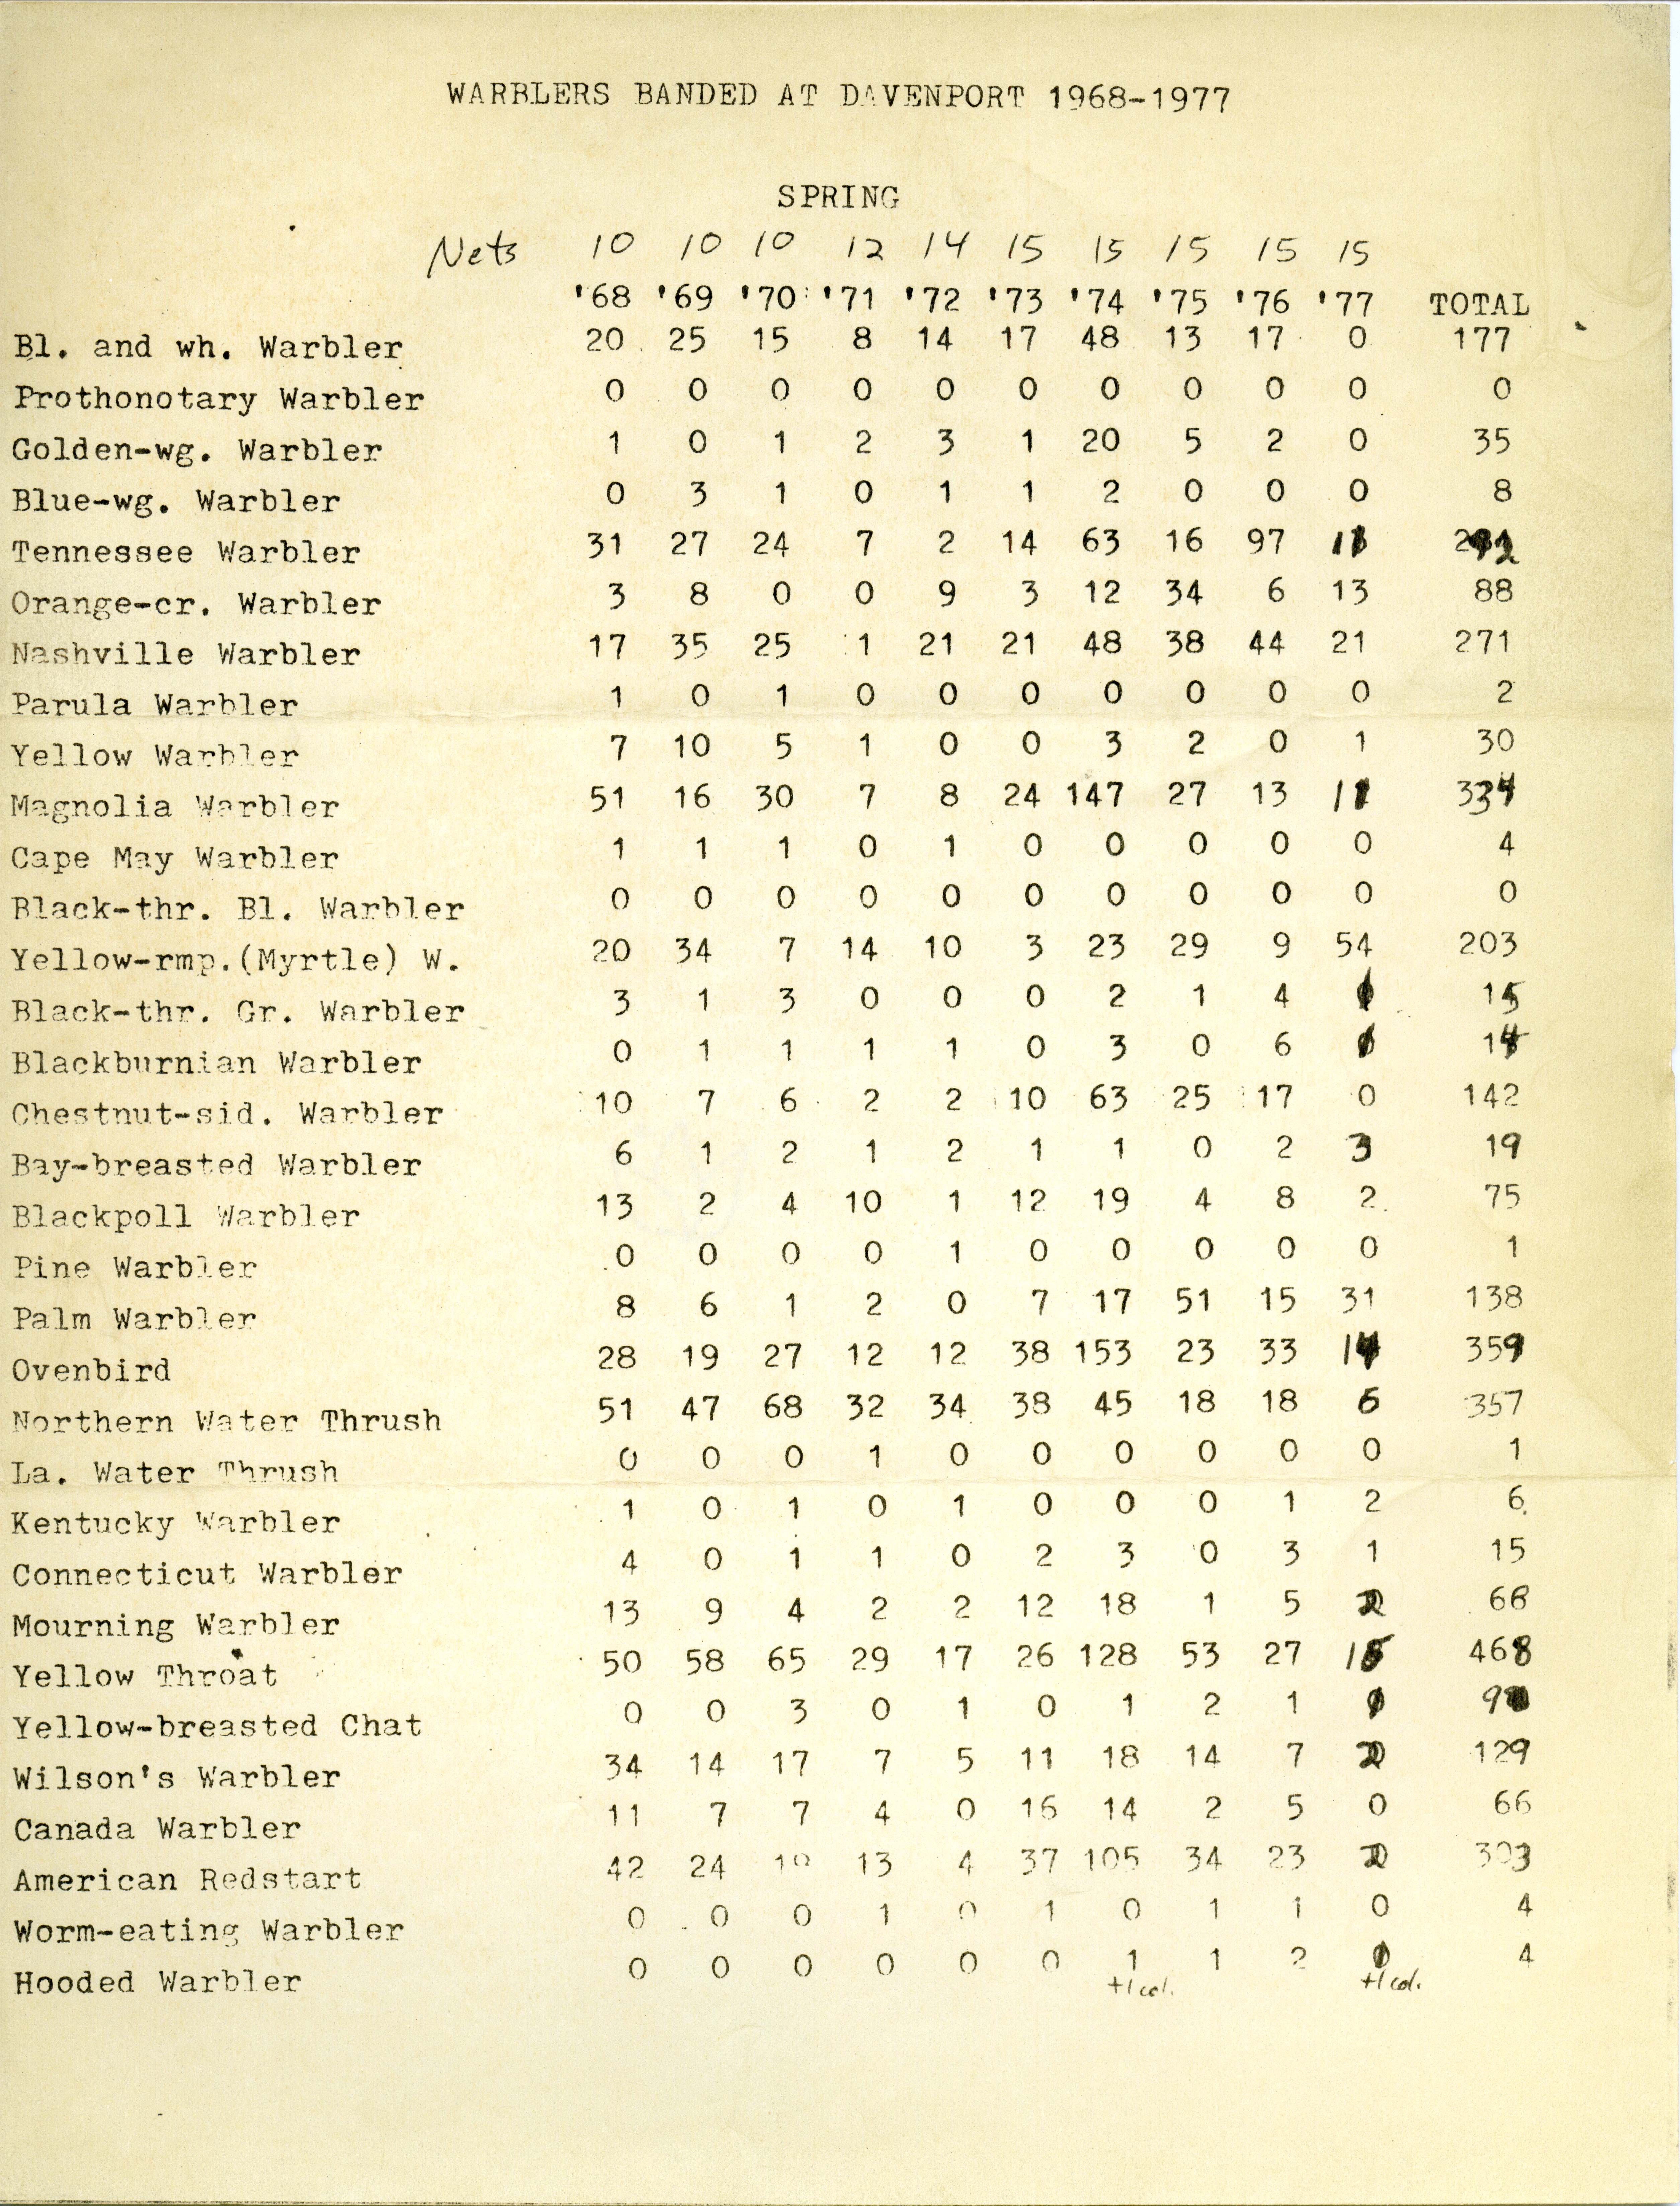 Warblers banded at Davenport 1968-1977, Spring